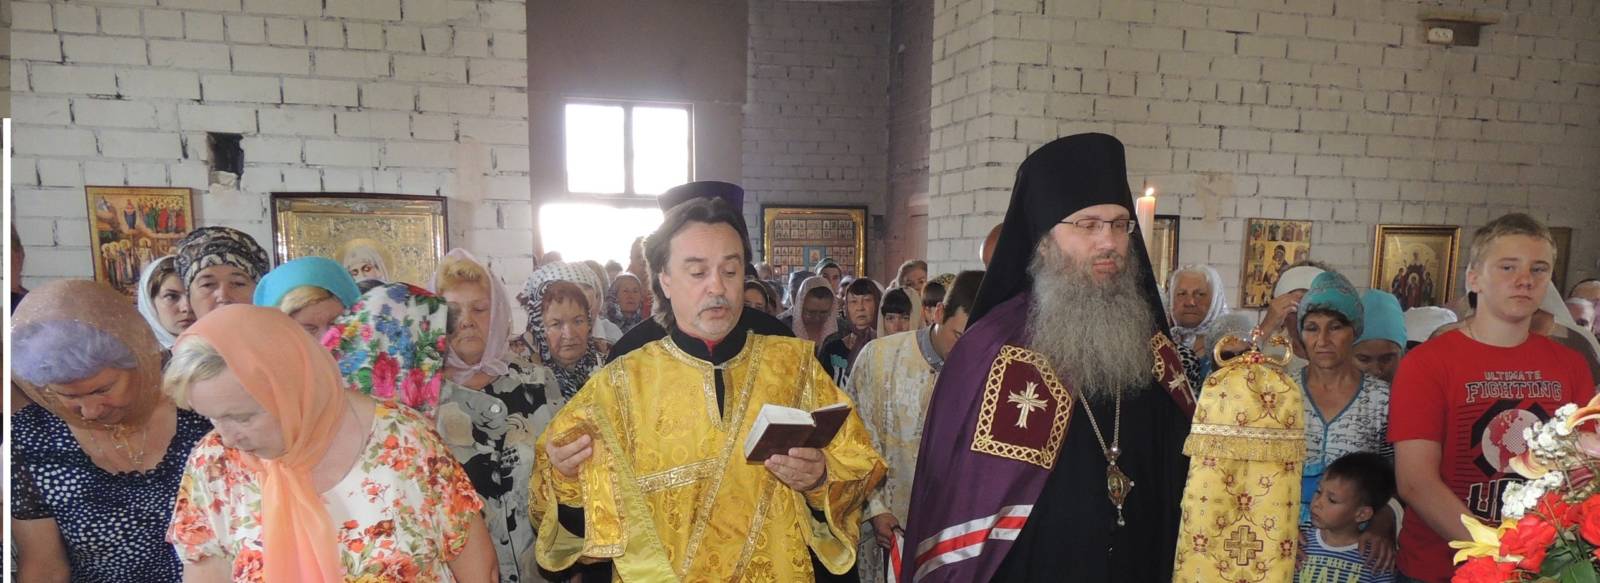 Божественная литургия в храме Рождества Христова в г. Урюпинске.